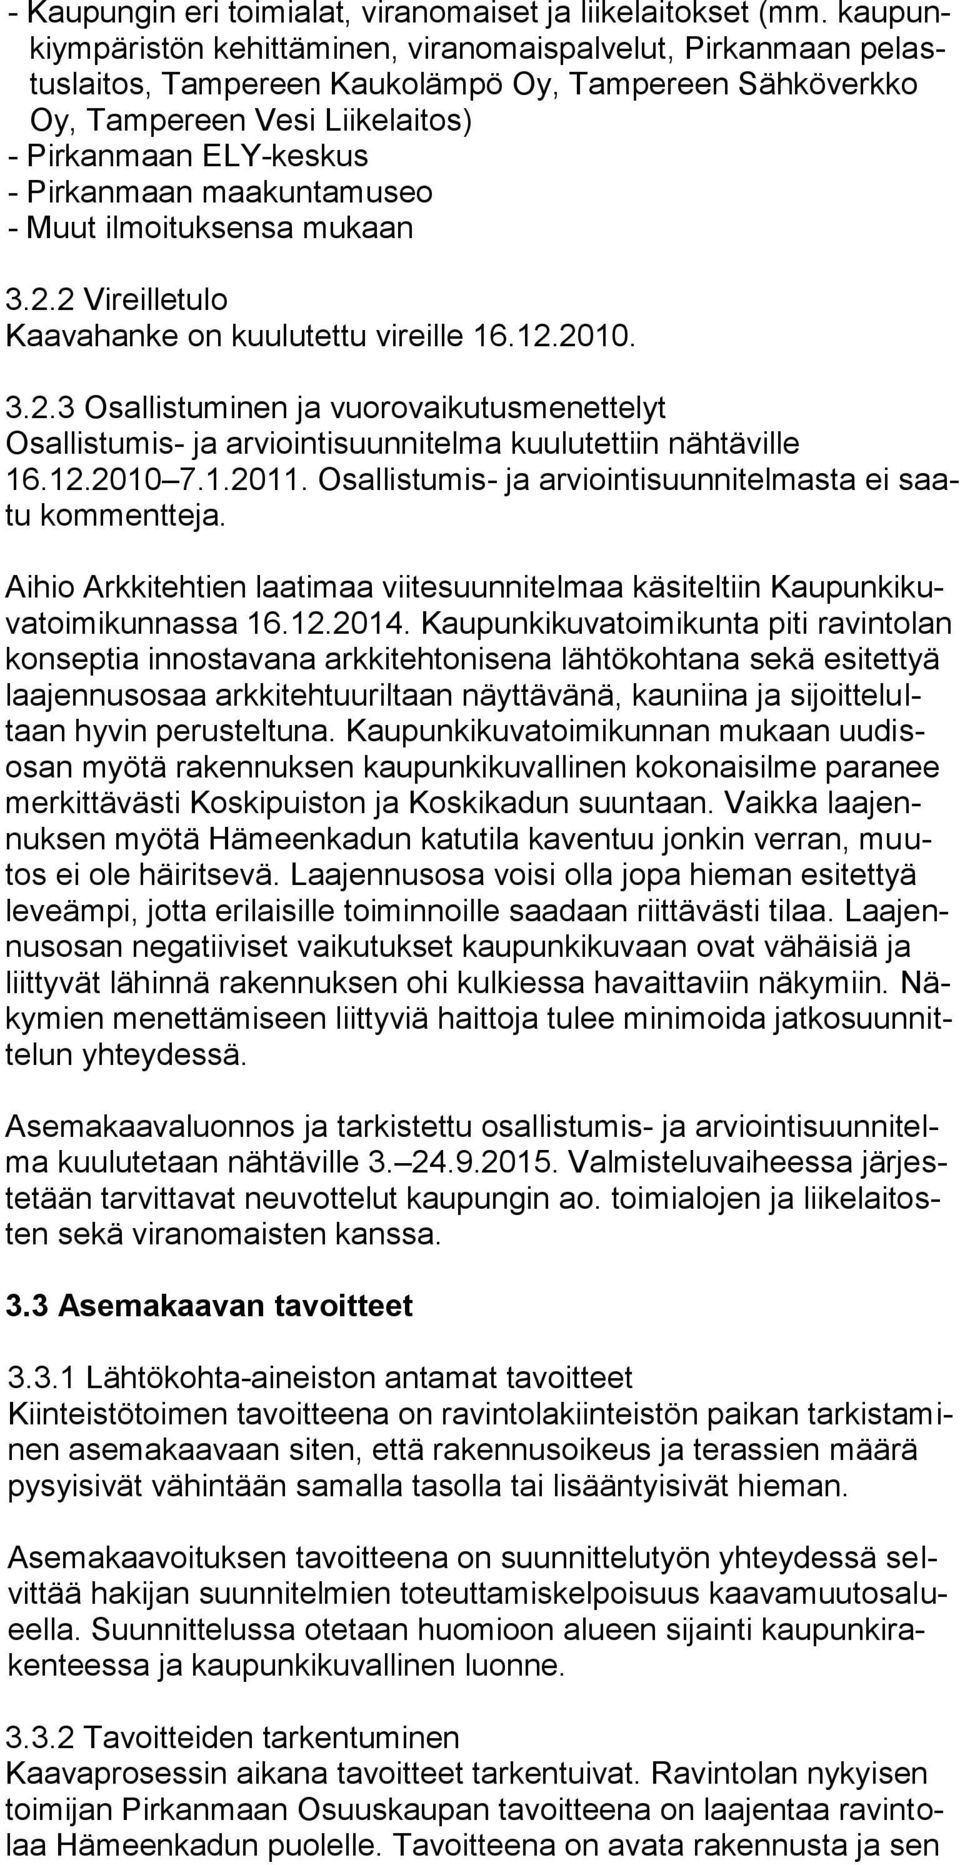 maakuntamuseo - Muut ilmoituksensa mukaan 3.2.2 Vireilletulo Kaavahanke on kuulutettu vireille 16.12.2010. 3.2.3 Osallistuminen ja vuorovaikutusmenettelyt Osallistumis- ja arviointisuunnitelma kuulutettiin nähtäville 16.